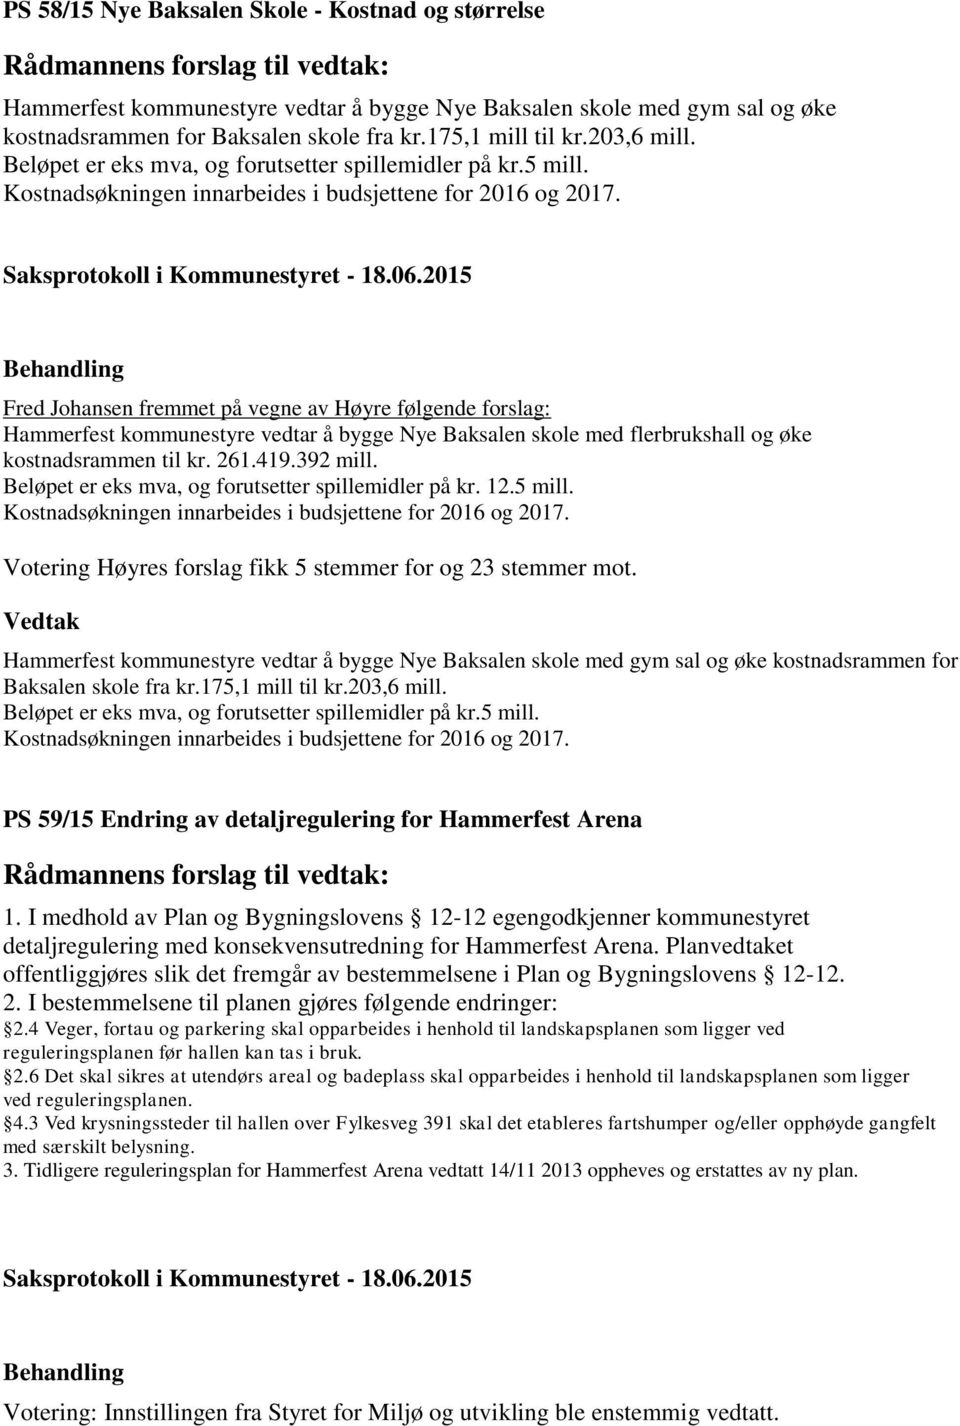 Fred Johansen fremmet på vegne av Høyre følgende forslag: Hammerfest kommunestyre vedtar å bygge Nye Baksalen skole med flerbrukshall og øke kostnadsrammen til kr. 261.419.392 mill.